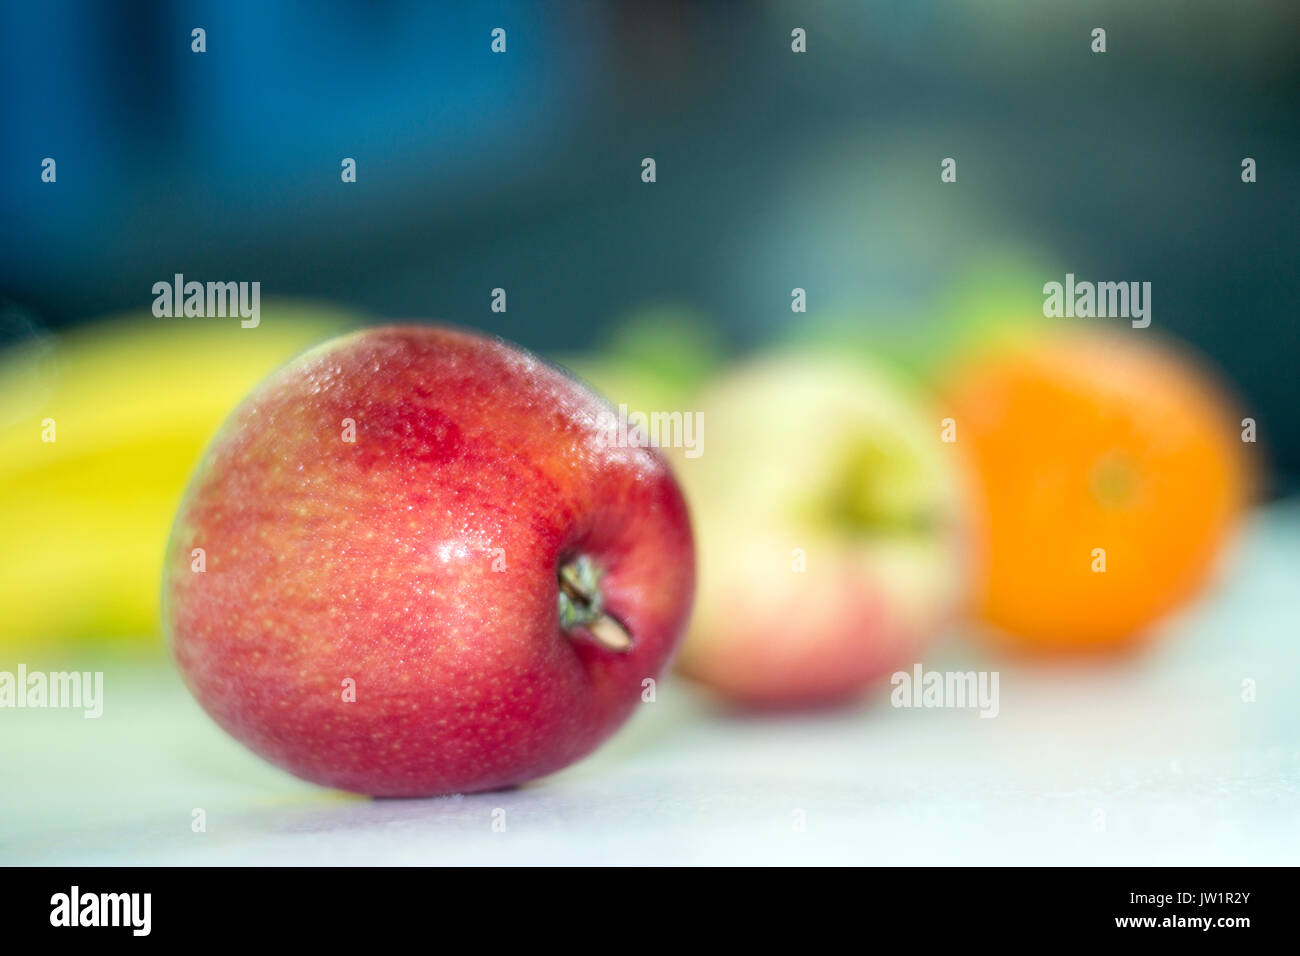 Manzana roja en meza con otras frutas desenfocadas, alimento saludable y naturale vitaminas biella, baja en calorías, apetecible y jugosa, de clima frío Foto Stock